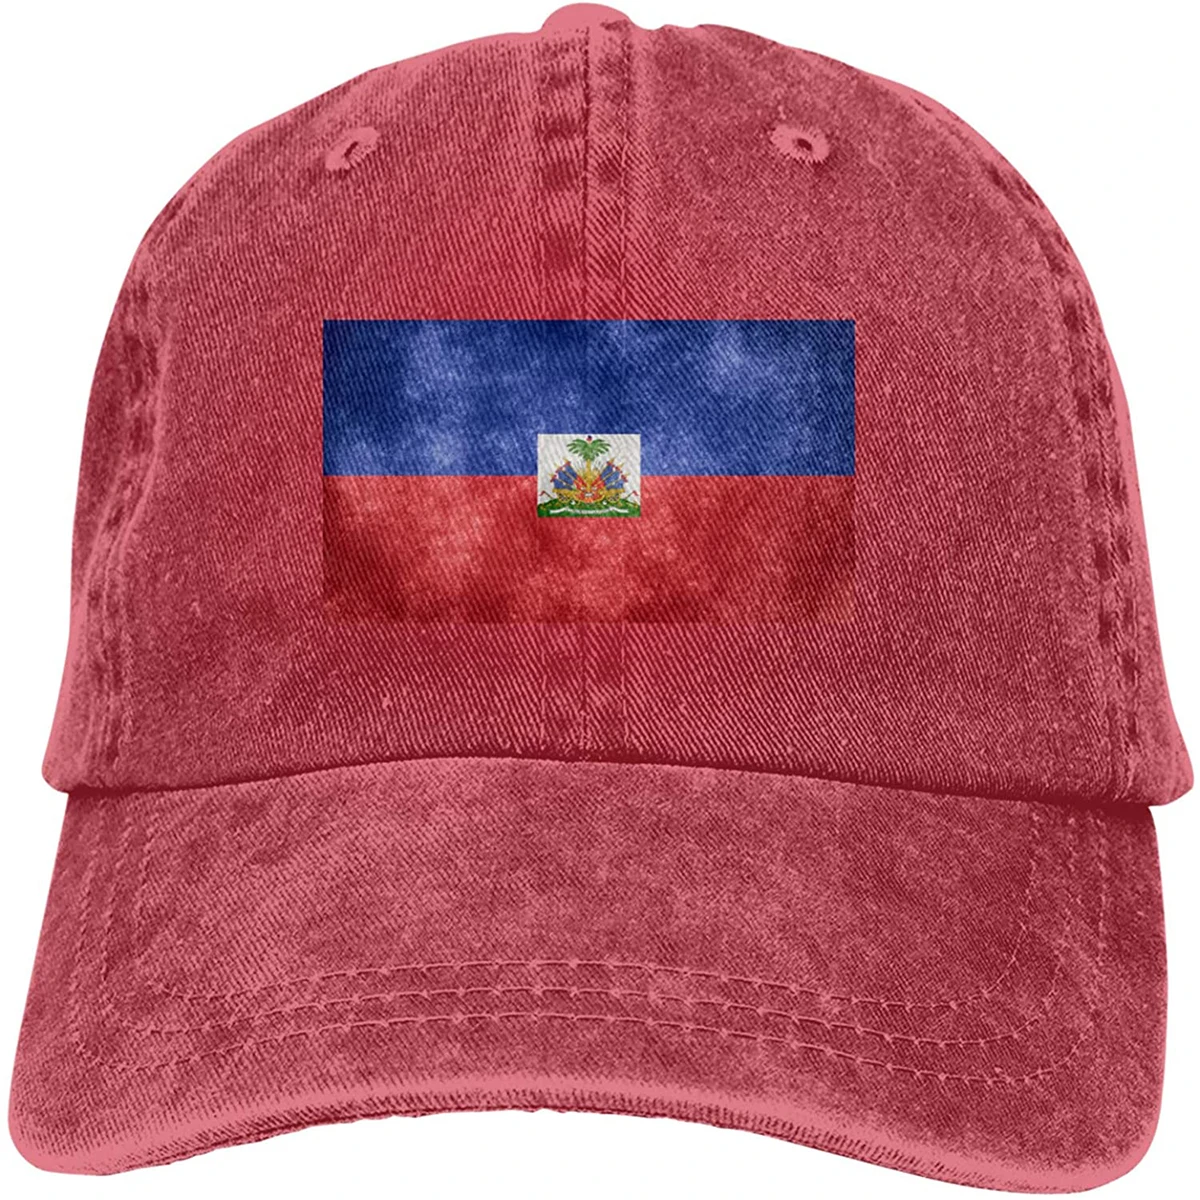 

Модная мягкая шляпа с флагом Гаити, подарок, шляпа для папы, кепка для тракера, ковбойская шляпа